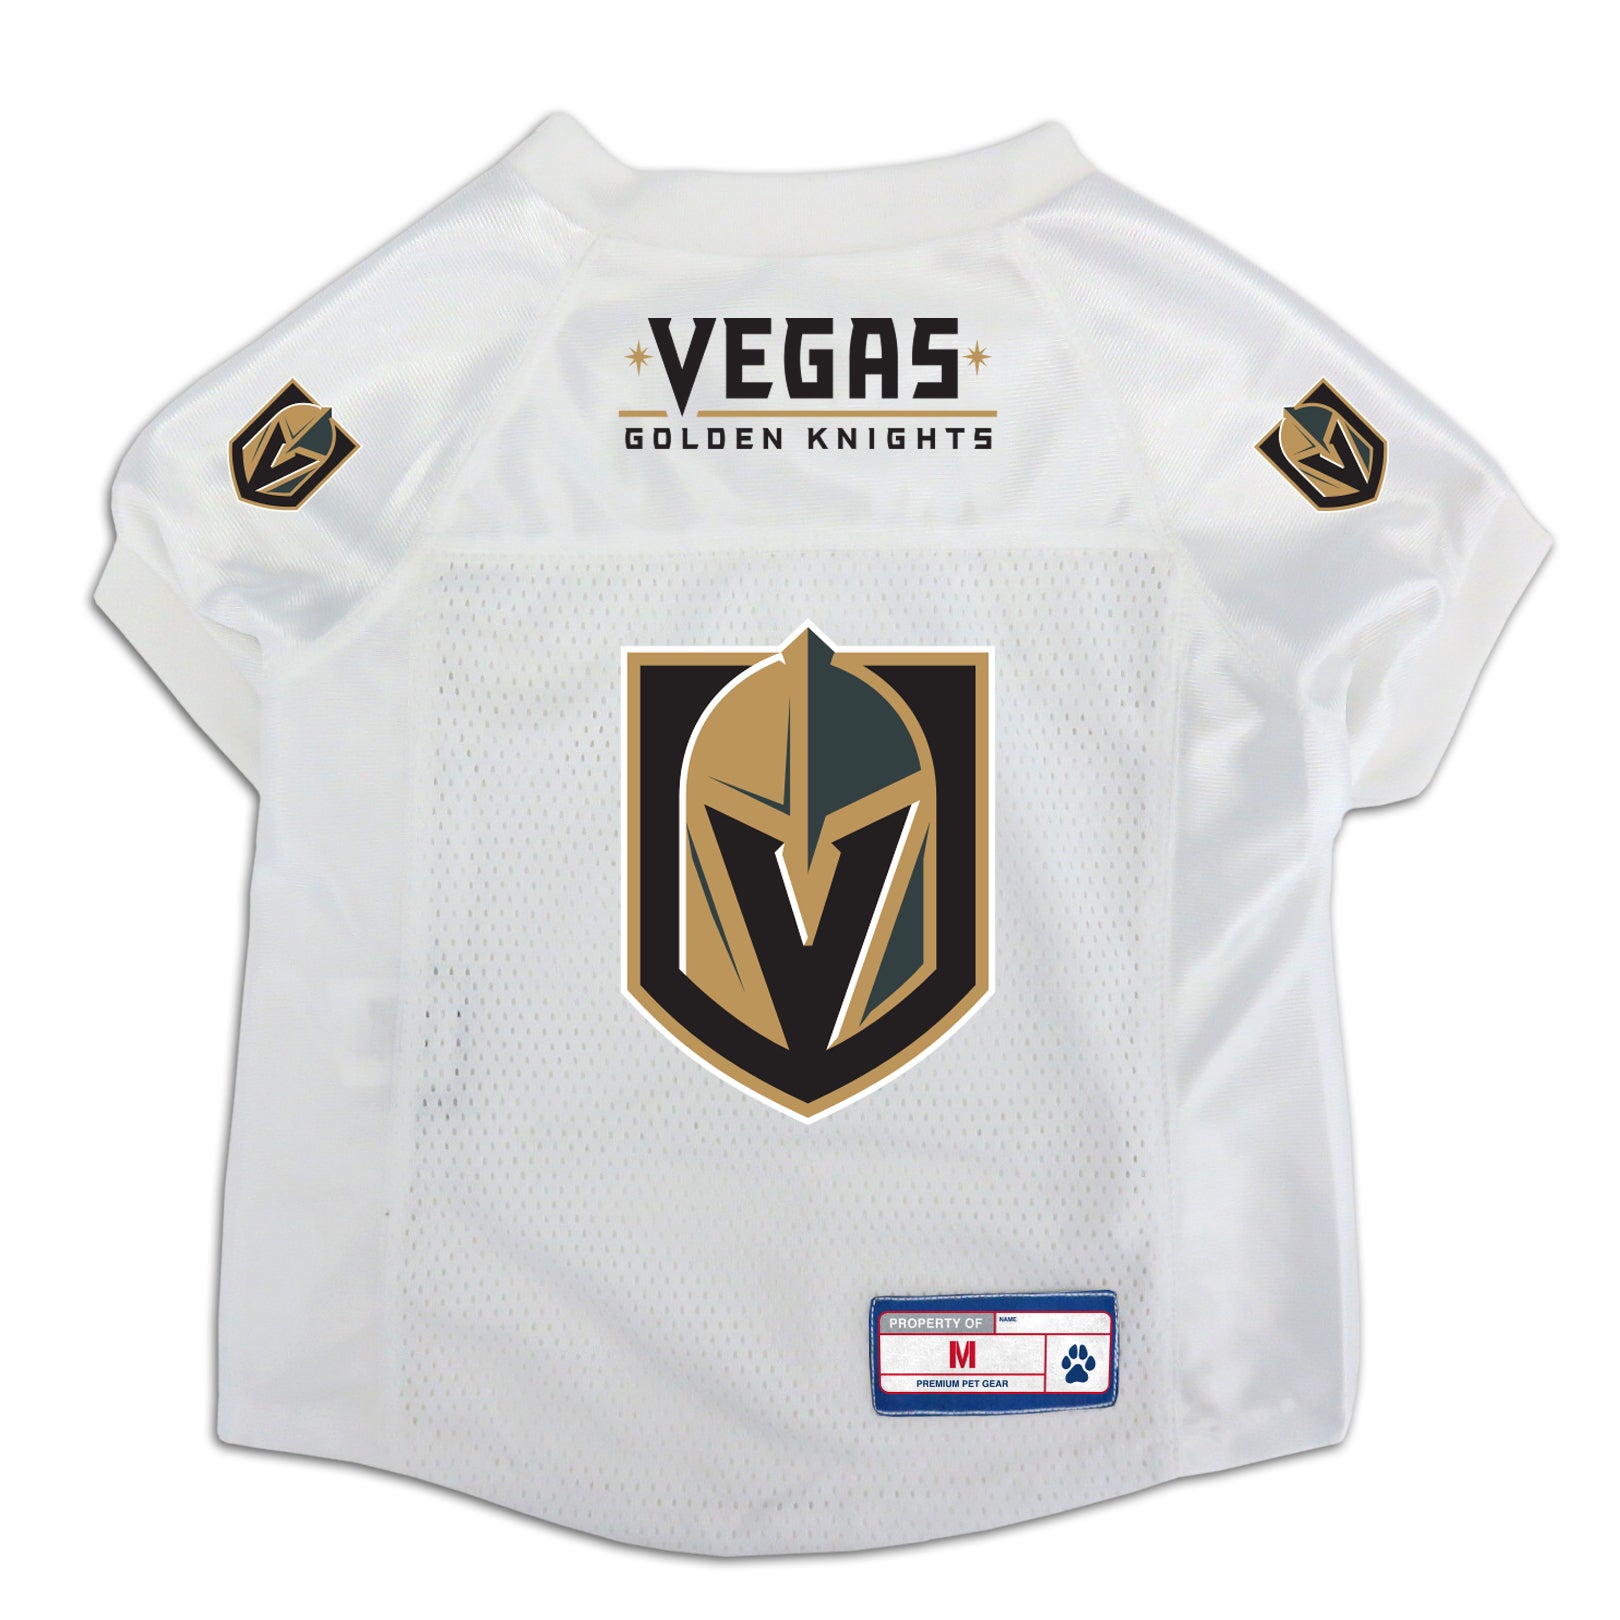 Vegas Golden Knights Pet Jersey - XL